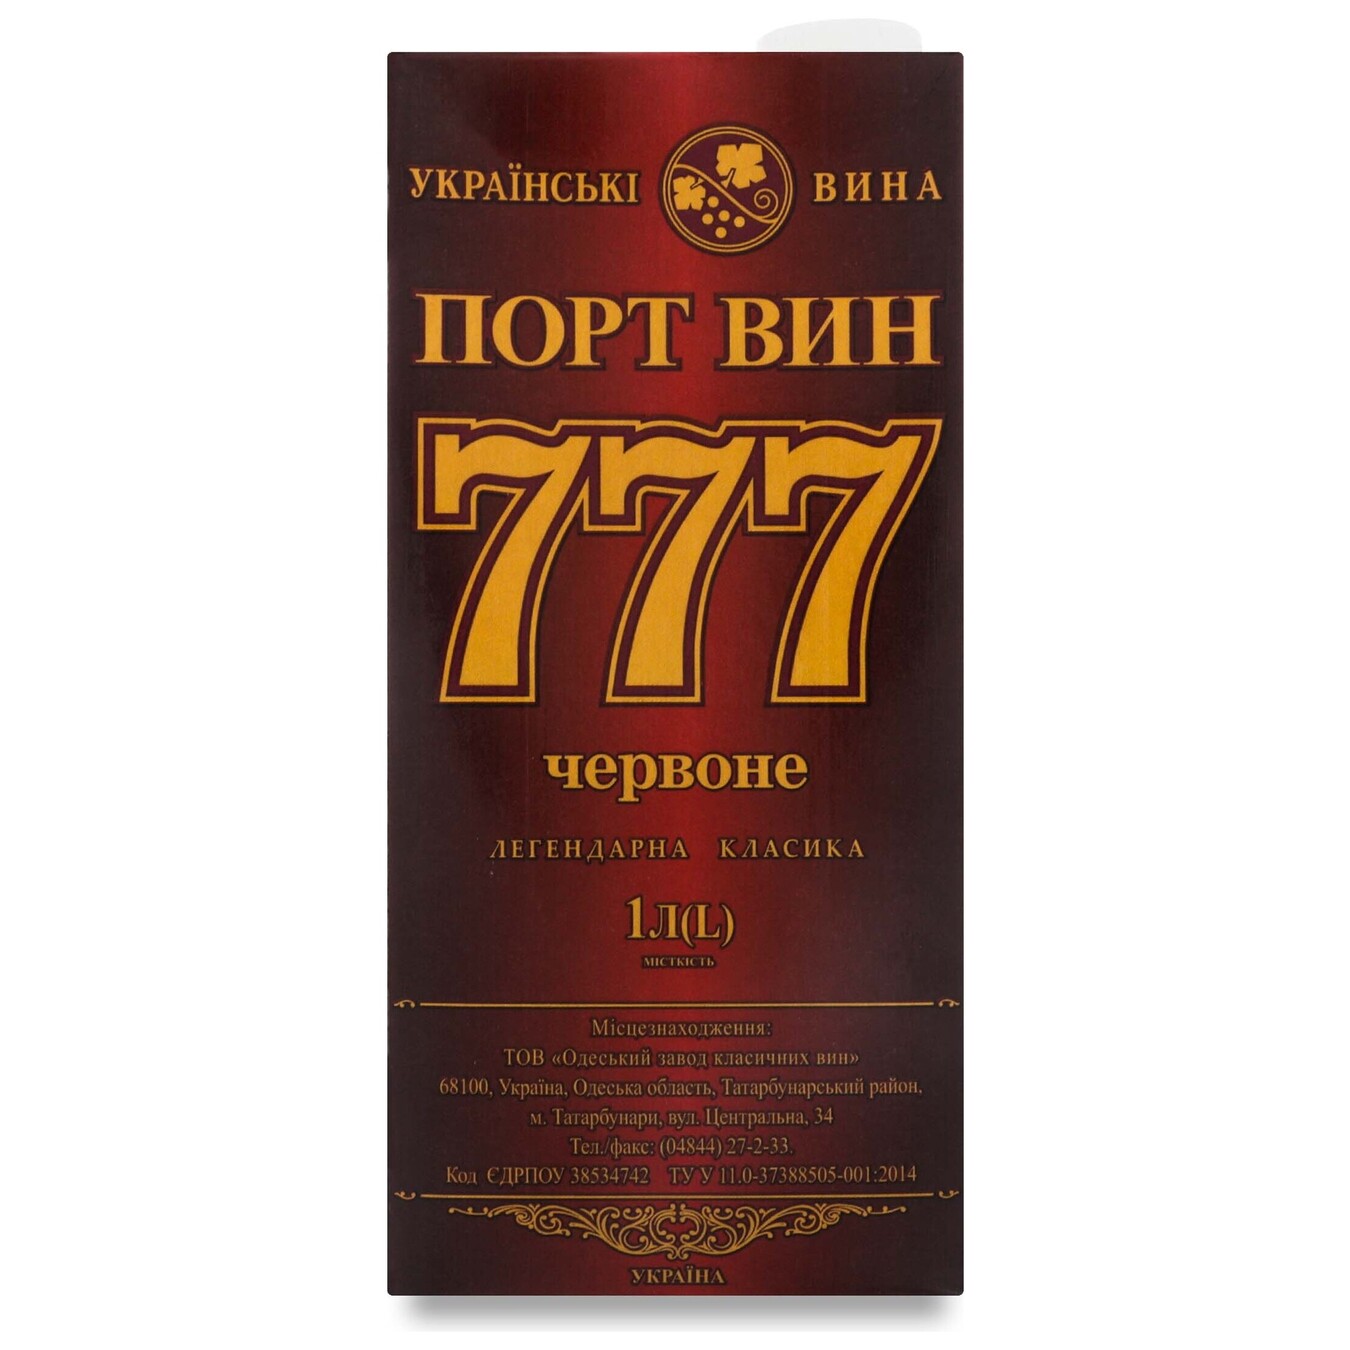 Вино Порт Вин 777 червоне 14,5% 1л